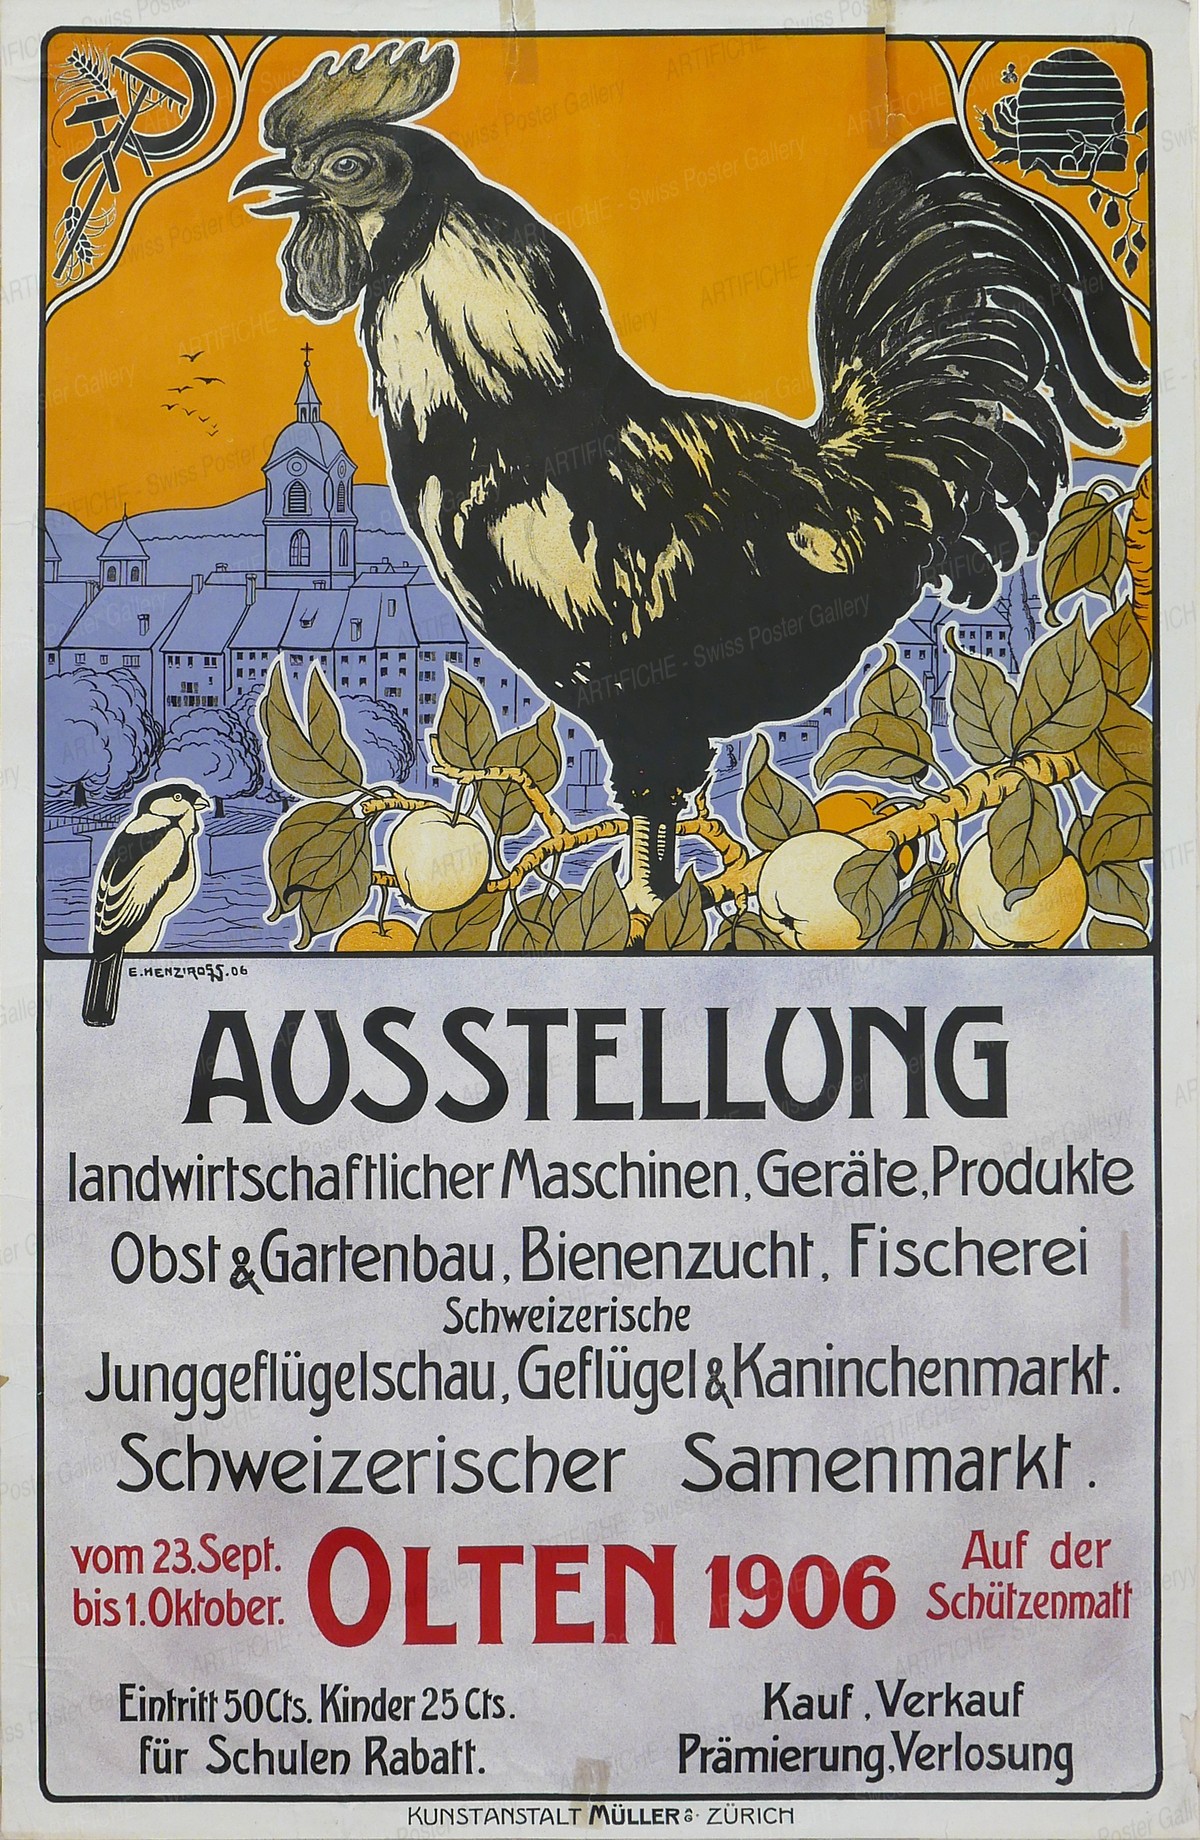 Ausstellung landwirtschaftlicher Maschinen, Geräte, Produkte, Obst- und Gartenbau, Bienenzucht, Fischerei, Junggeflügelschau – Olten 1906, Henziross E.